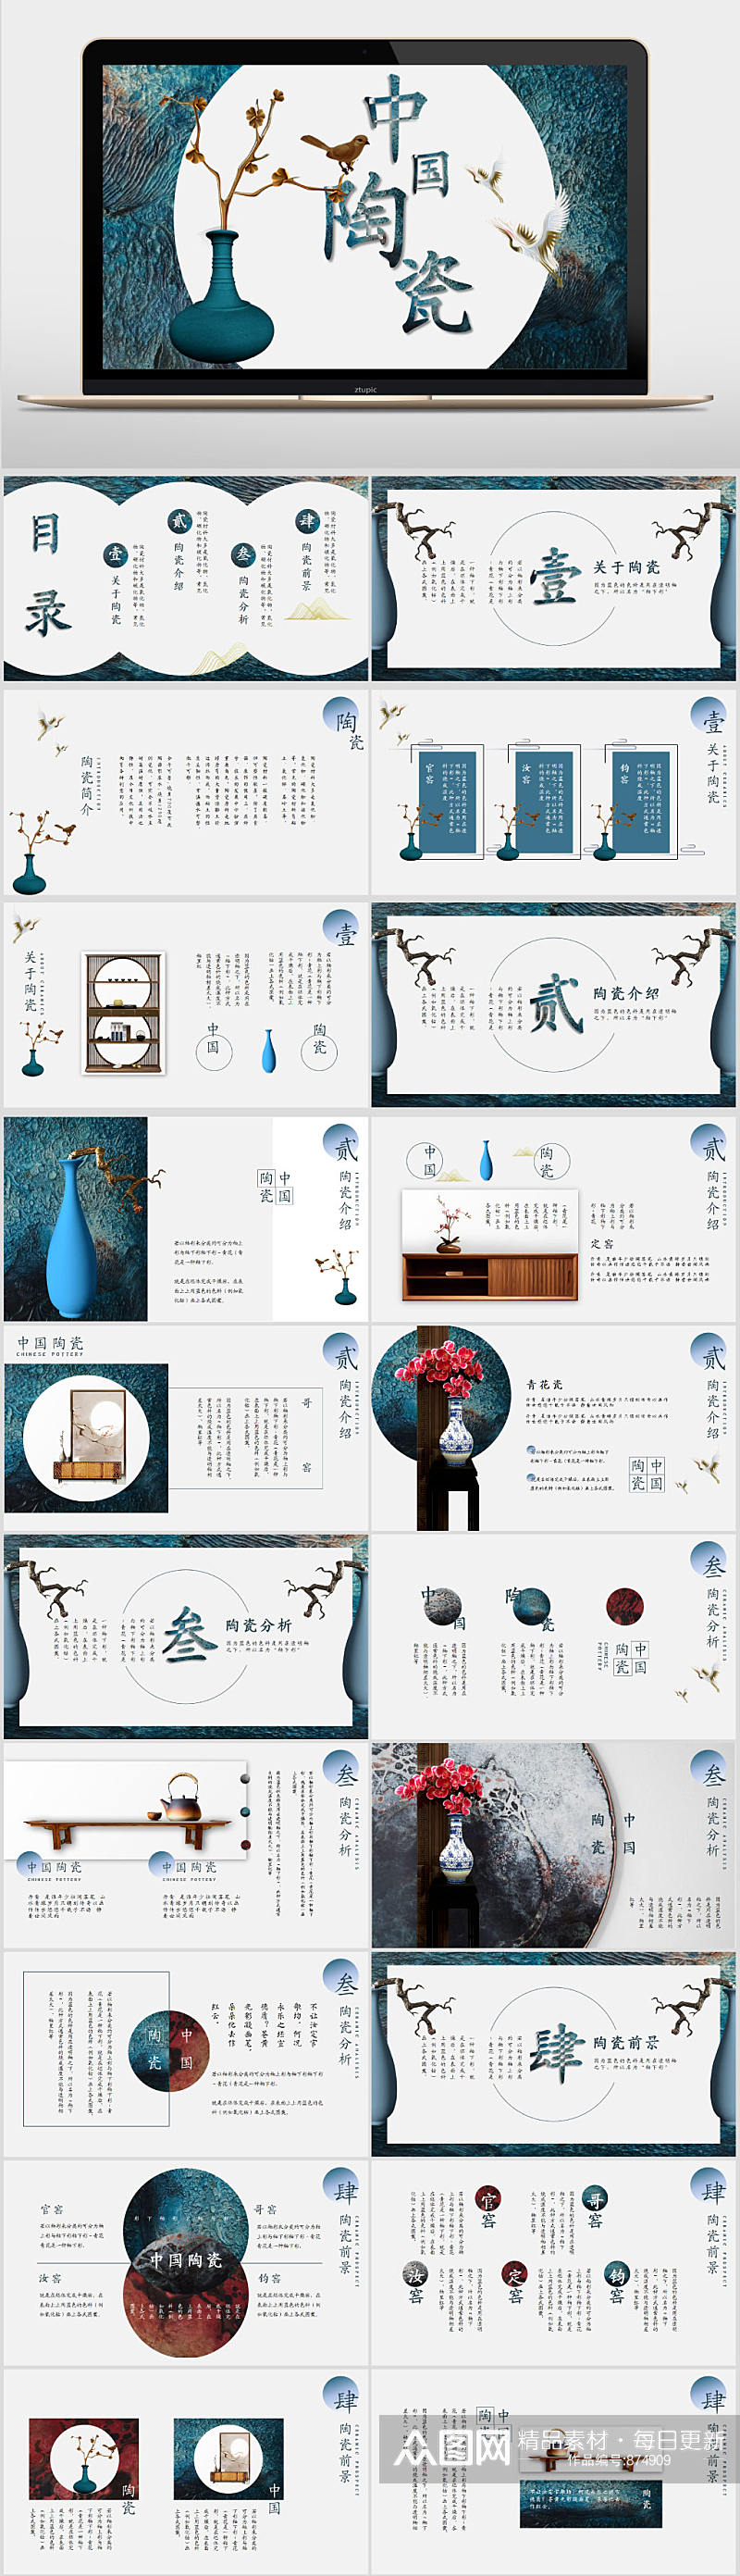 典雅大气陶瓷介绍中国风PPT模板素材